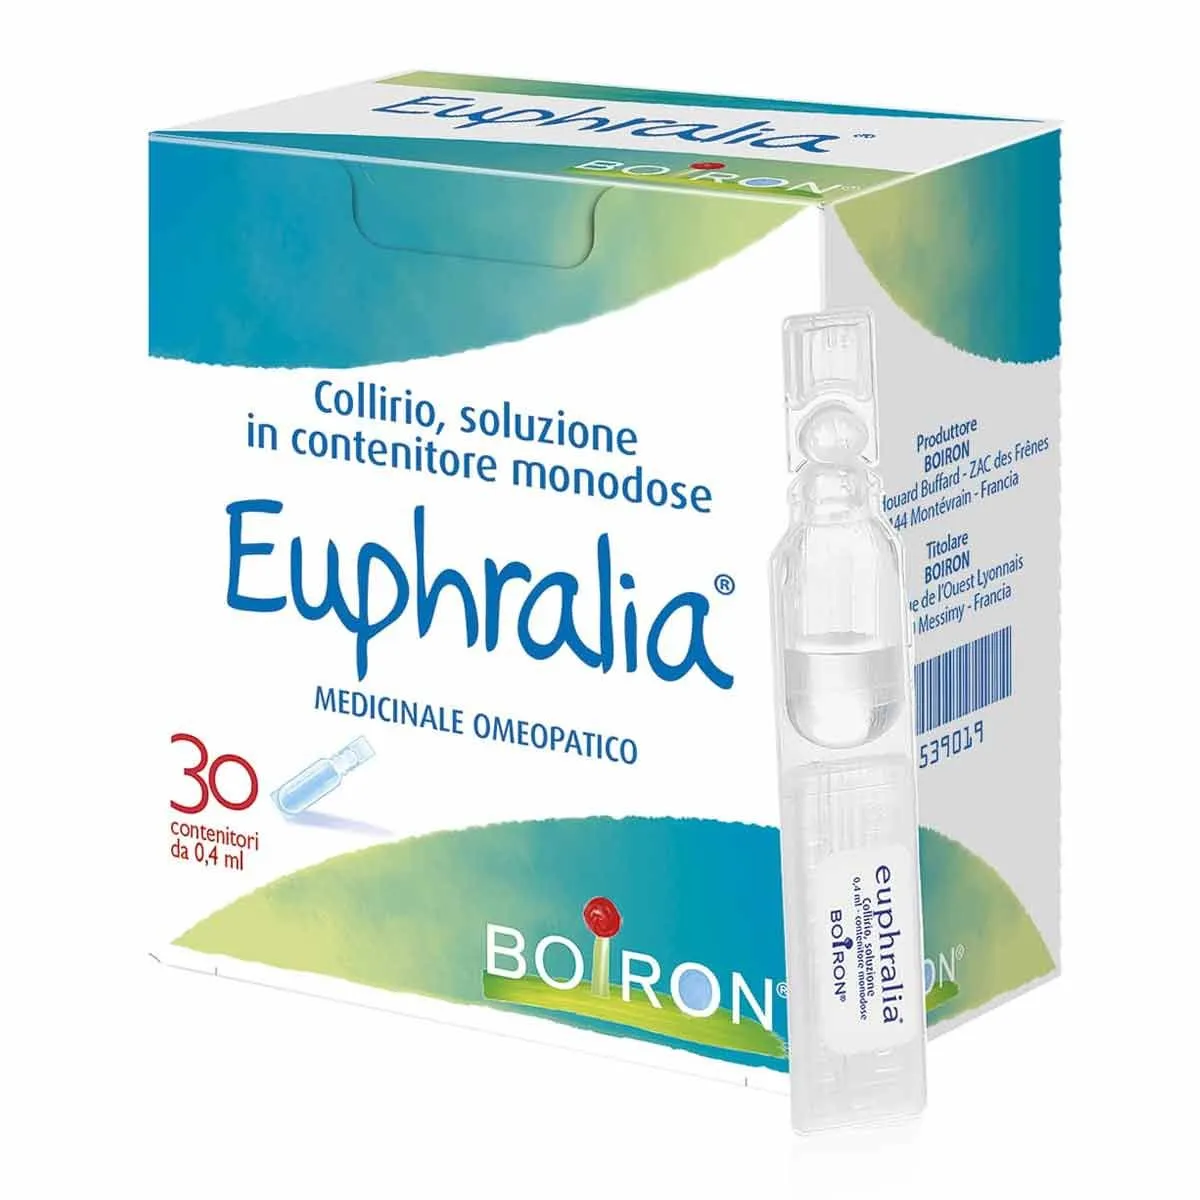  Euphralia Collirio 30 Contenitori Monodose